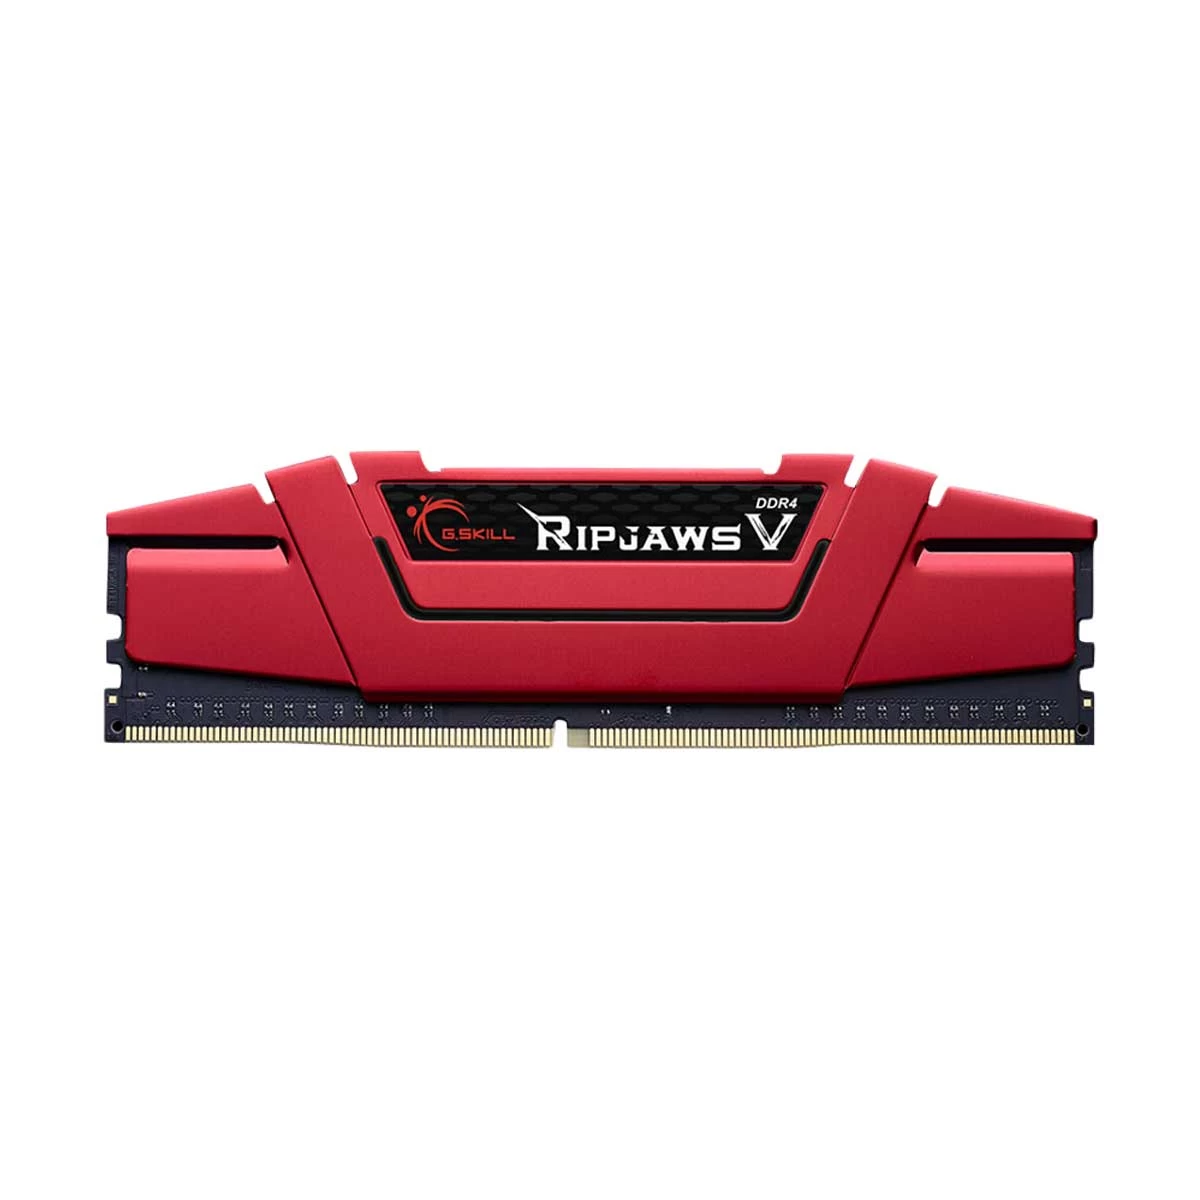 G.Skill Ripjaws V 16GB DDR4 2666MHz Red Heatsink Desktop RAM